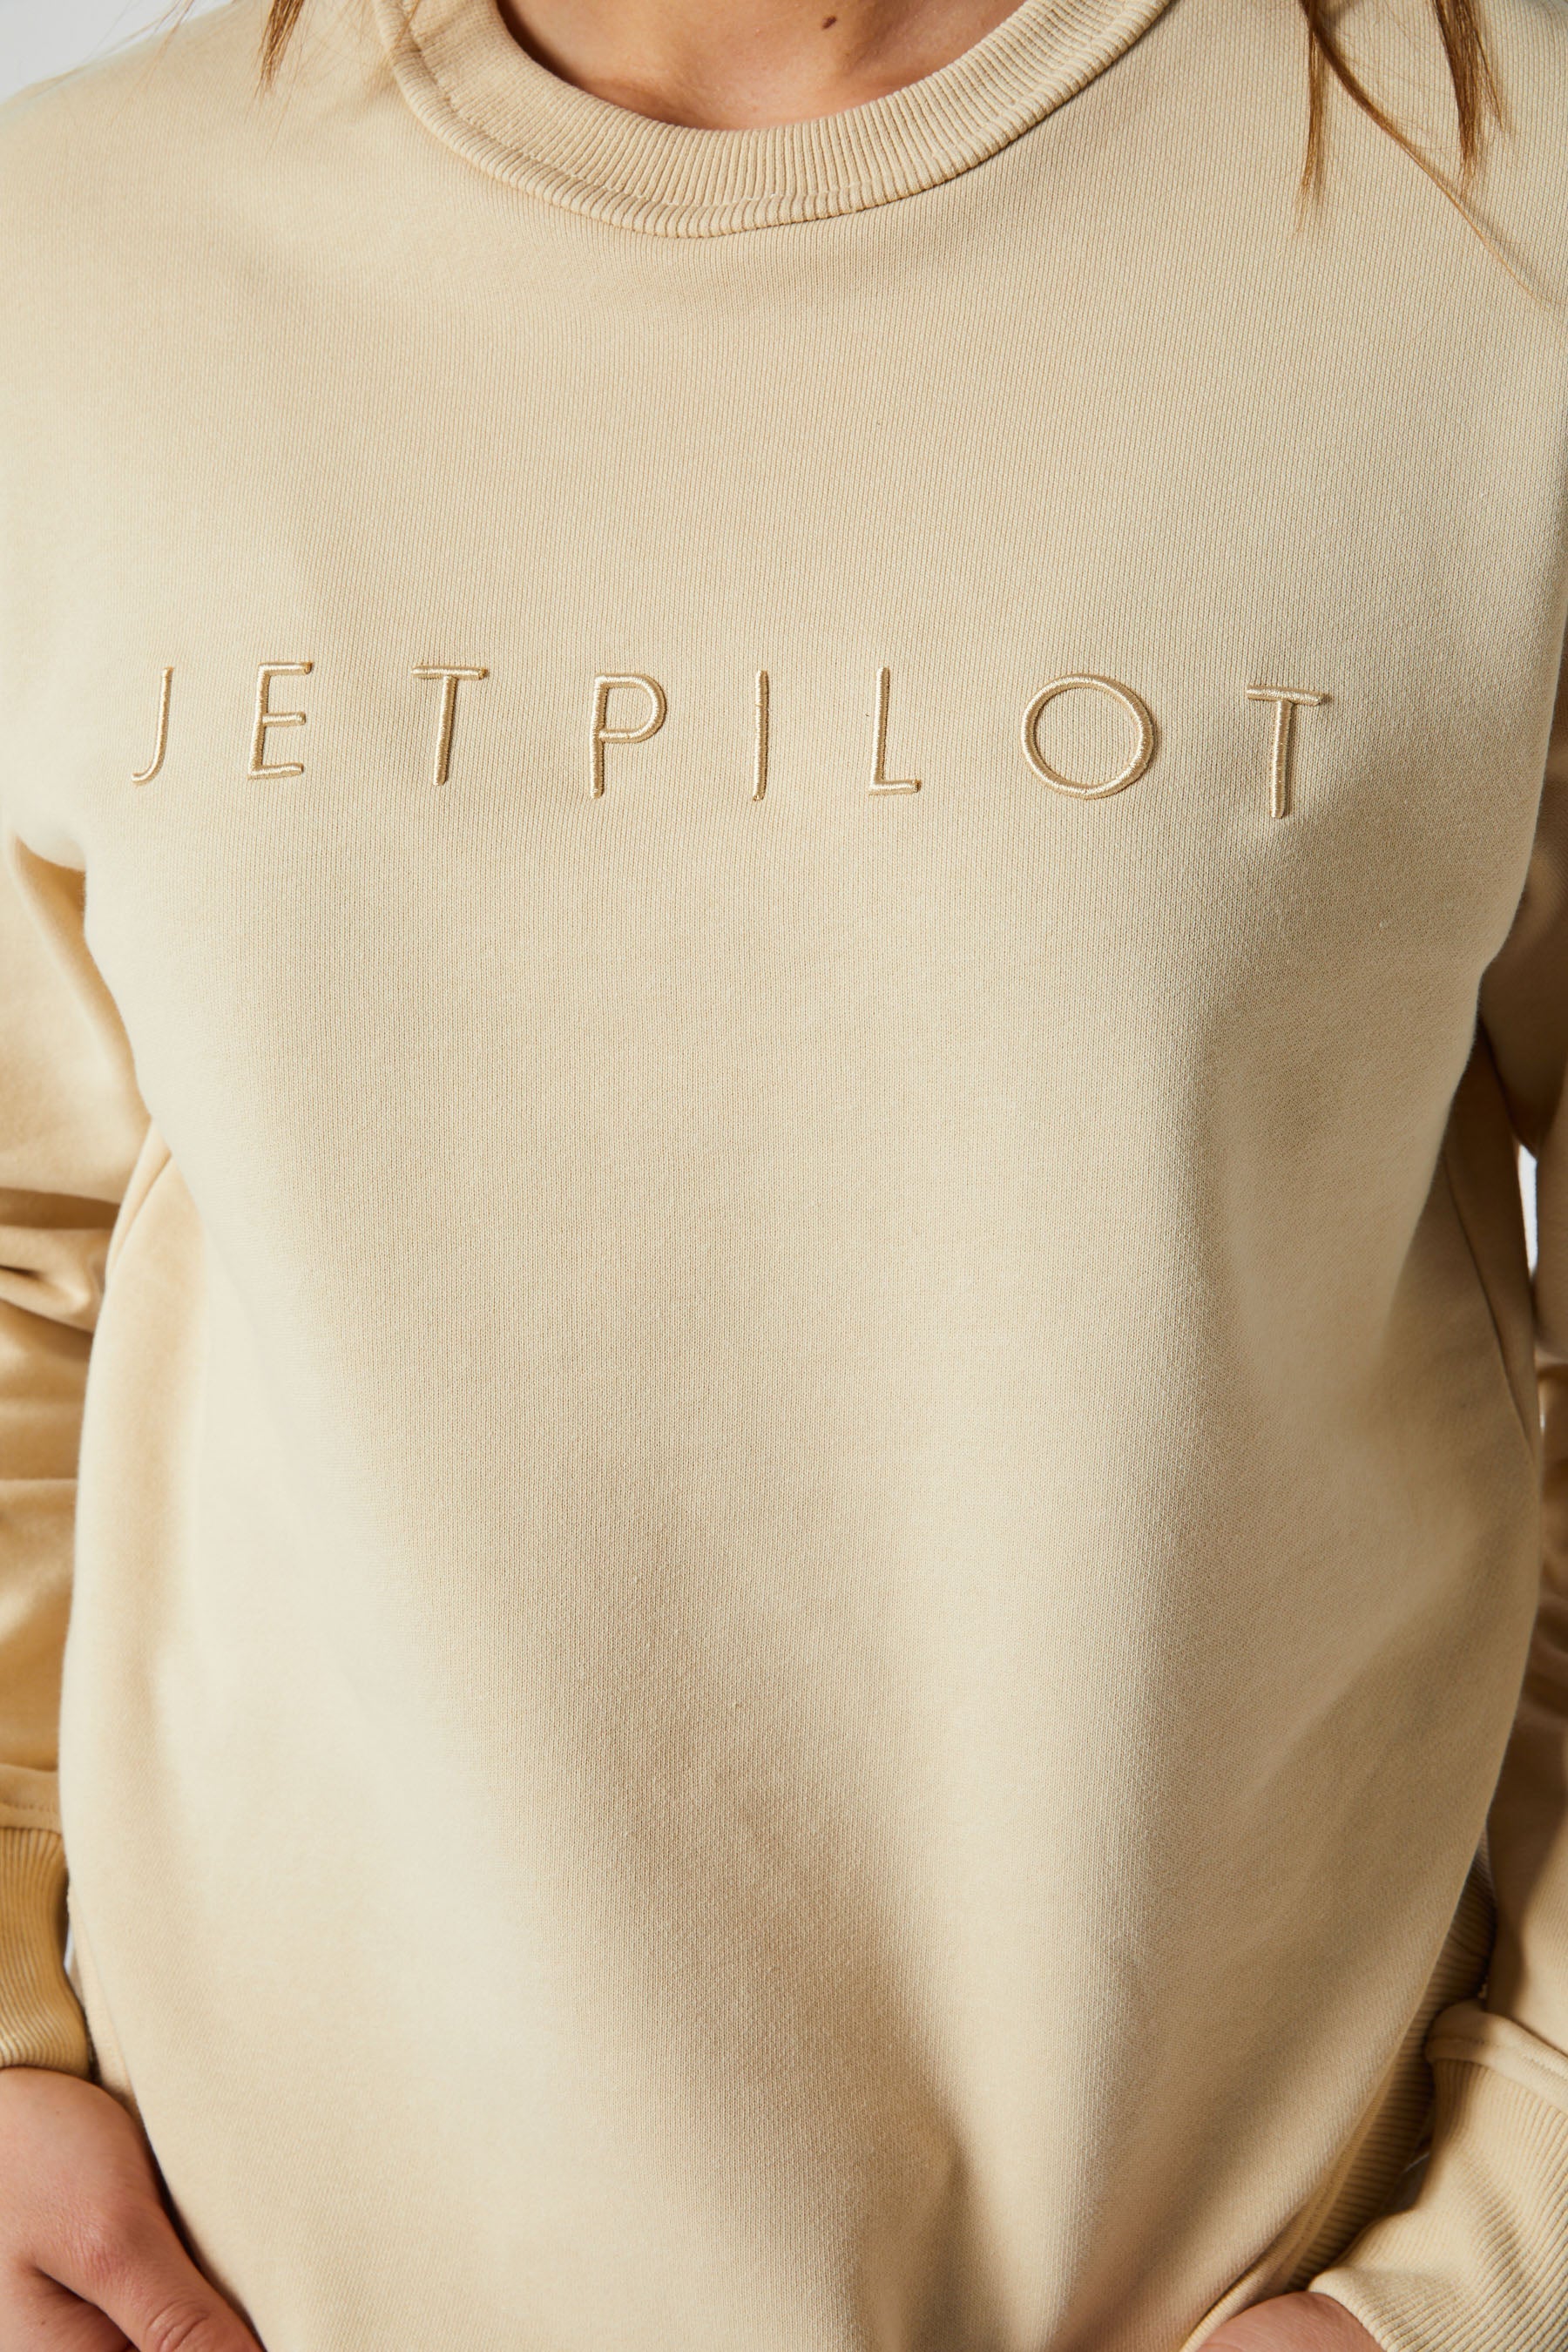 Jetpilot Simple Ladies Hoodie - Grey/Marle